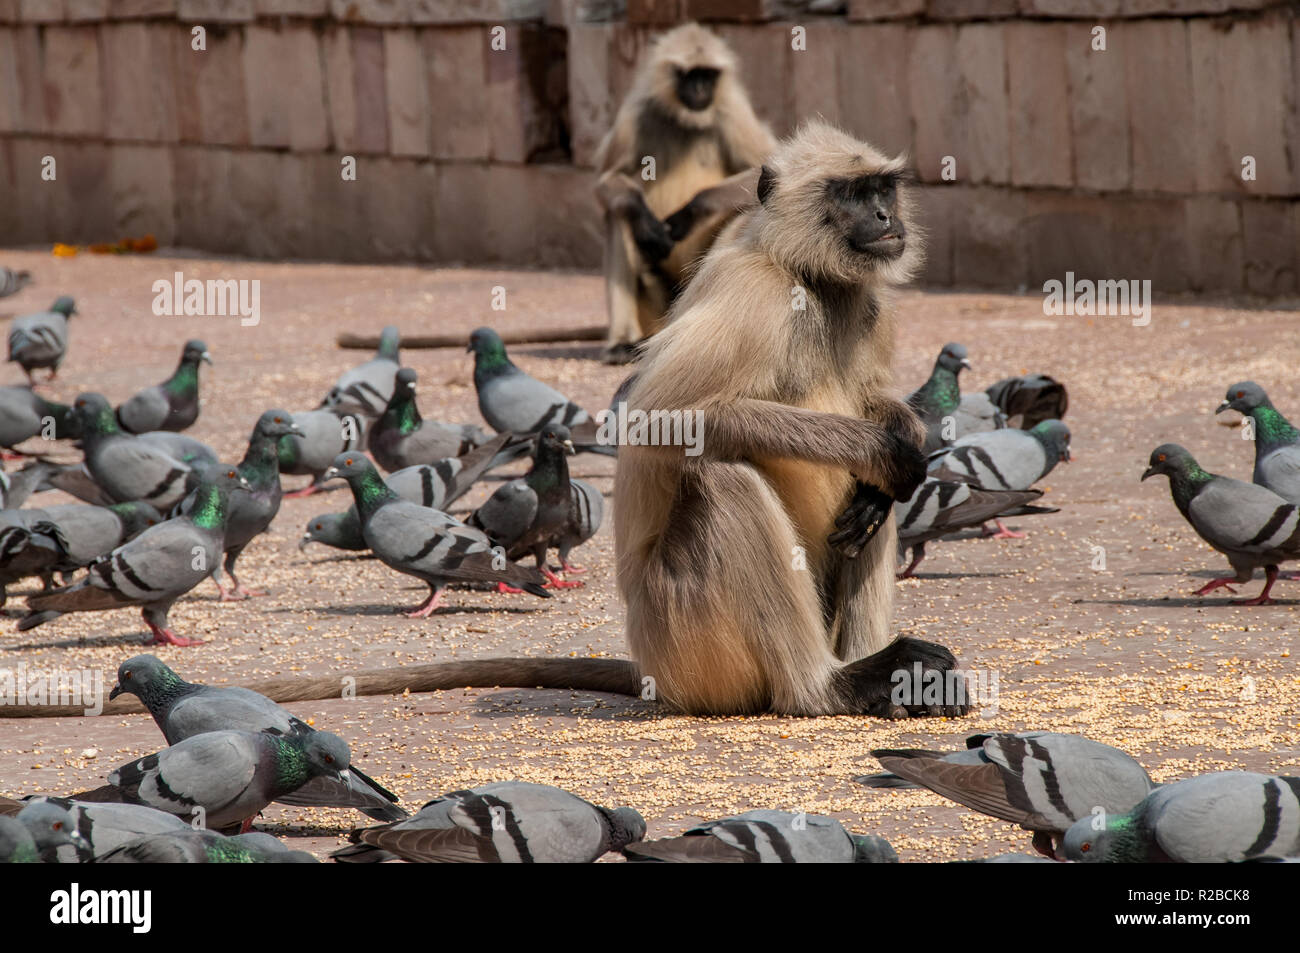 el-macaco-mientras-come-rodeado-de-palomas-del-fuerte-amber-r2bck8.jpg